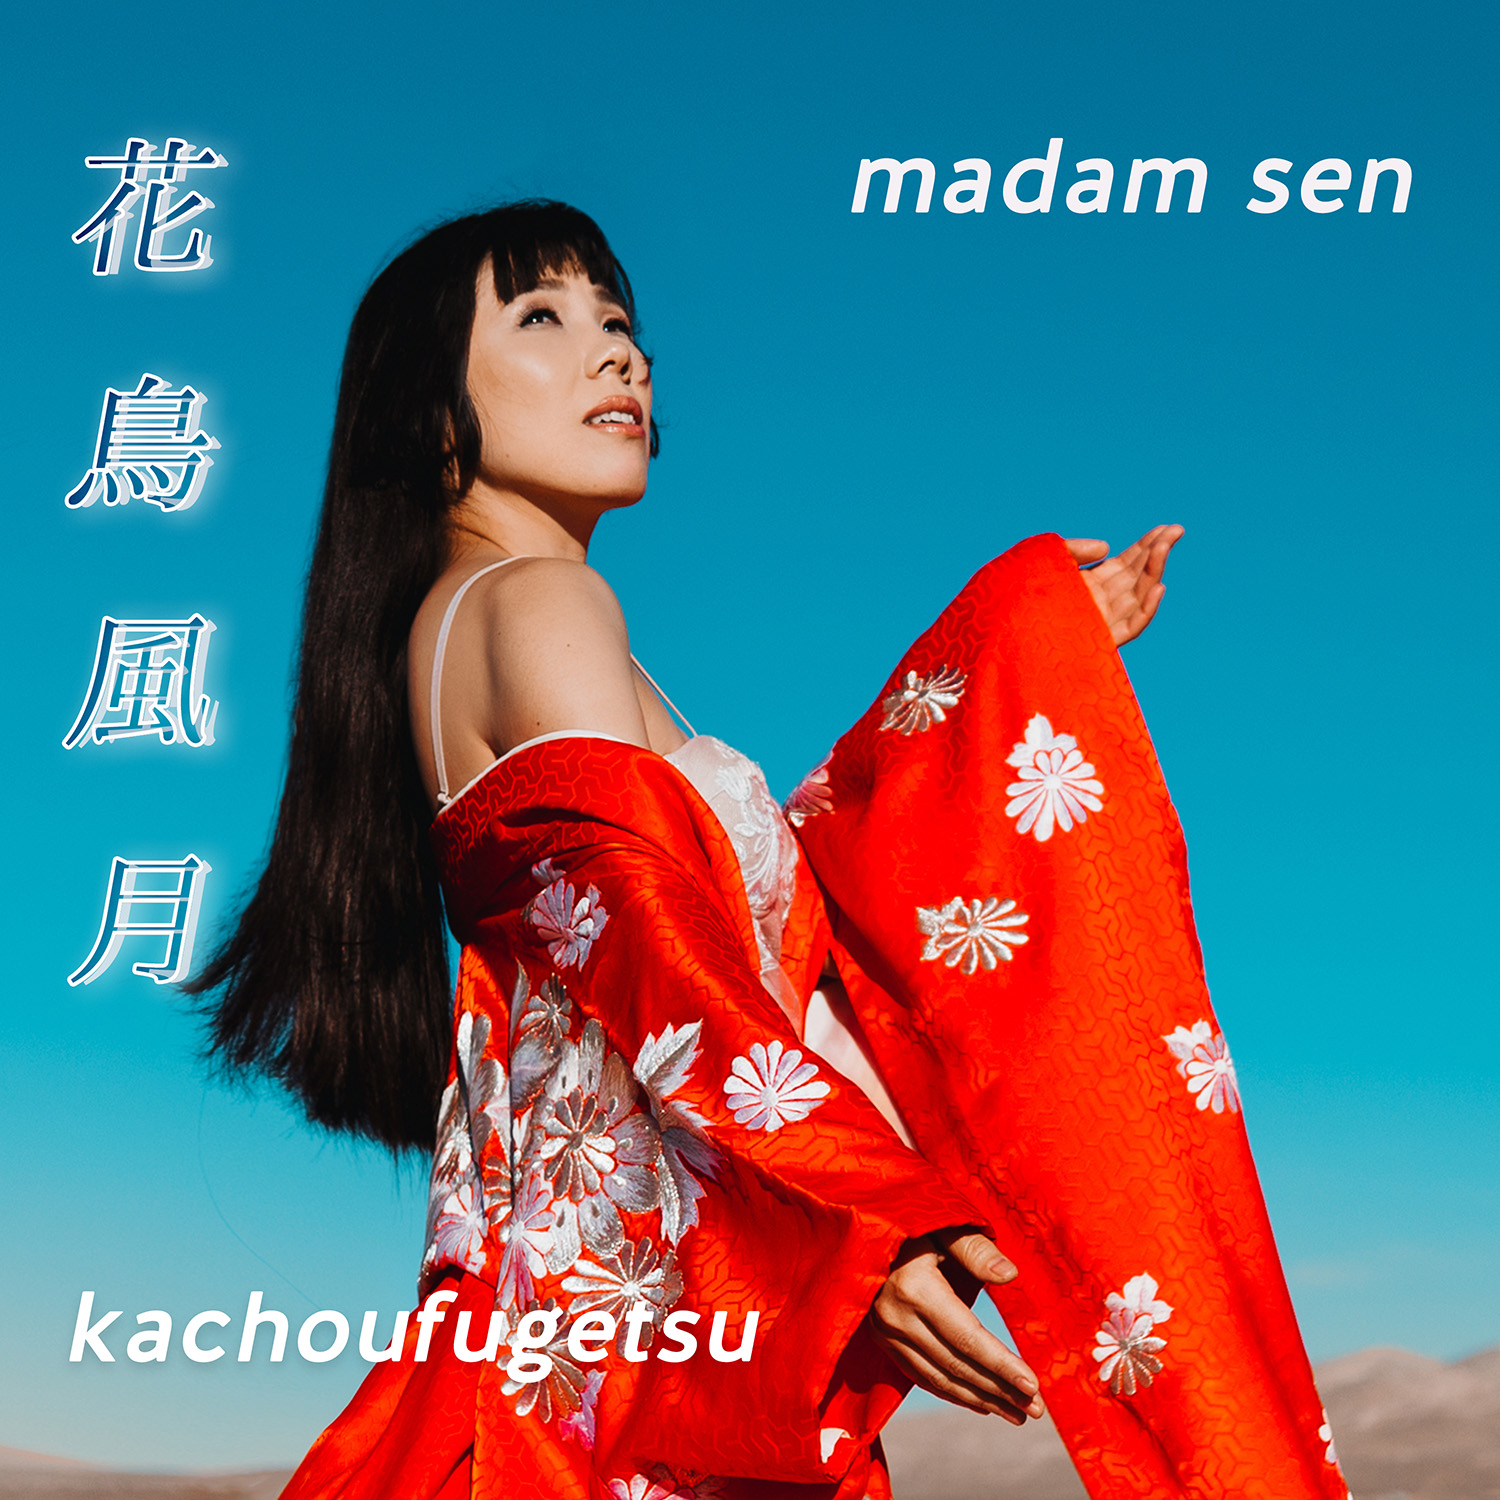 Madam Sen Kachoufugetsu